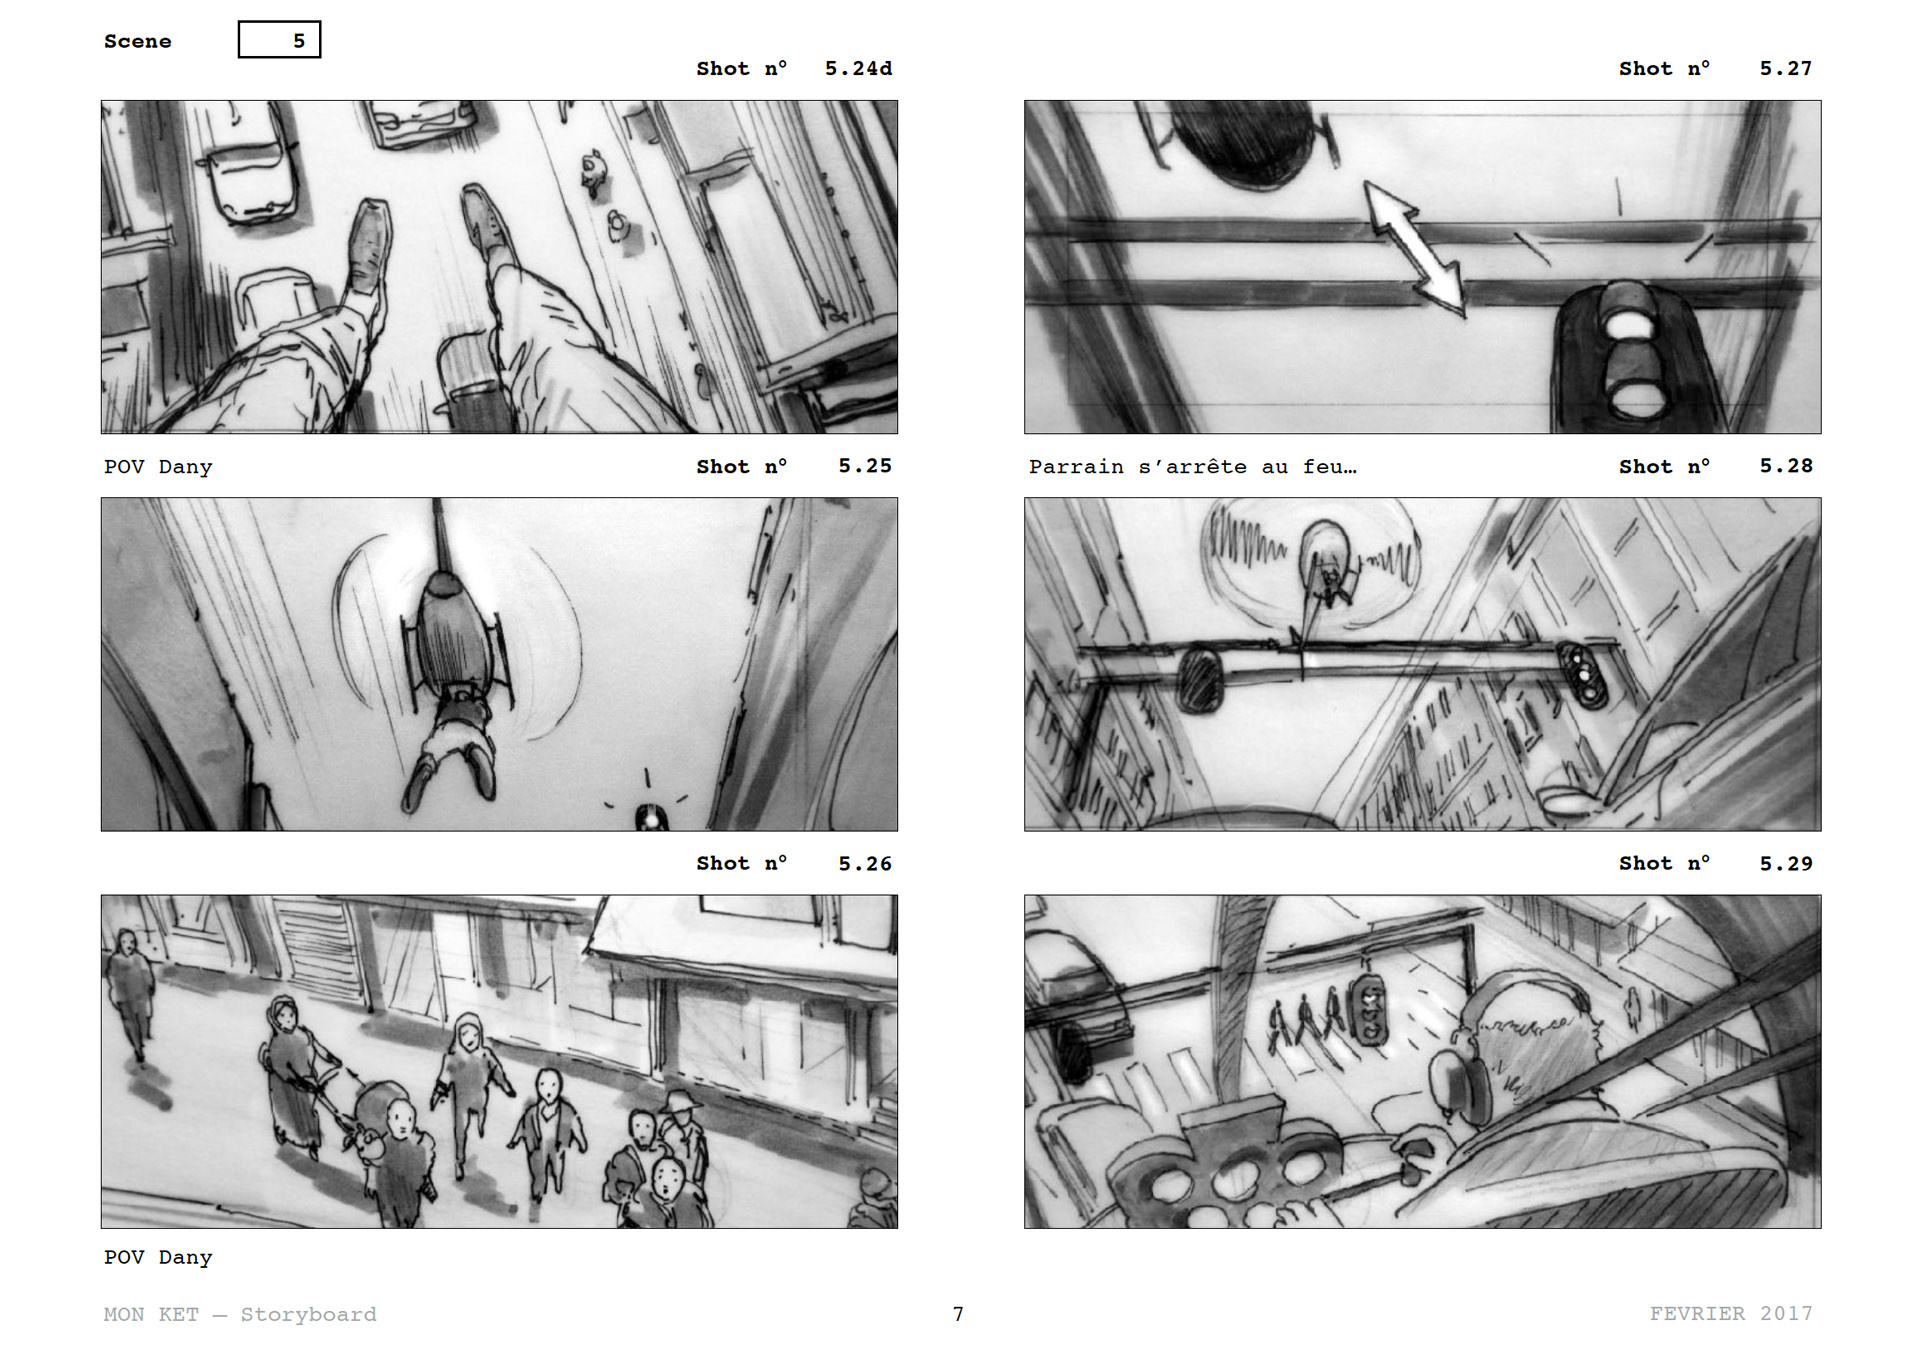 =Mon Ket — Storyboard, scènes d'évasion, page 6